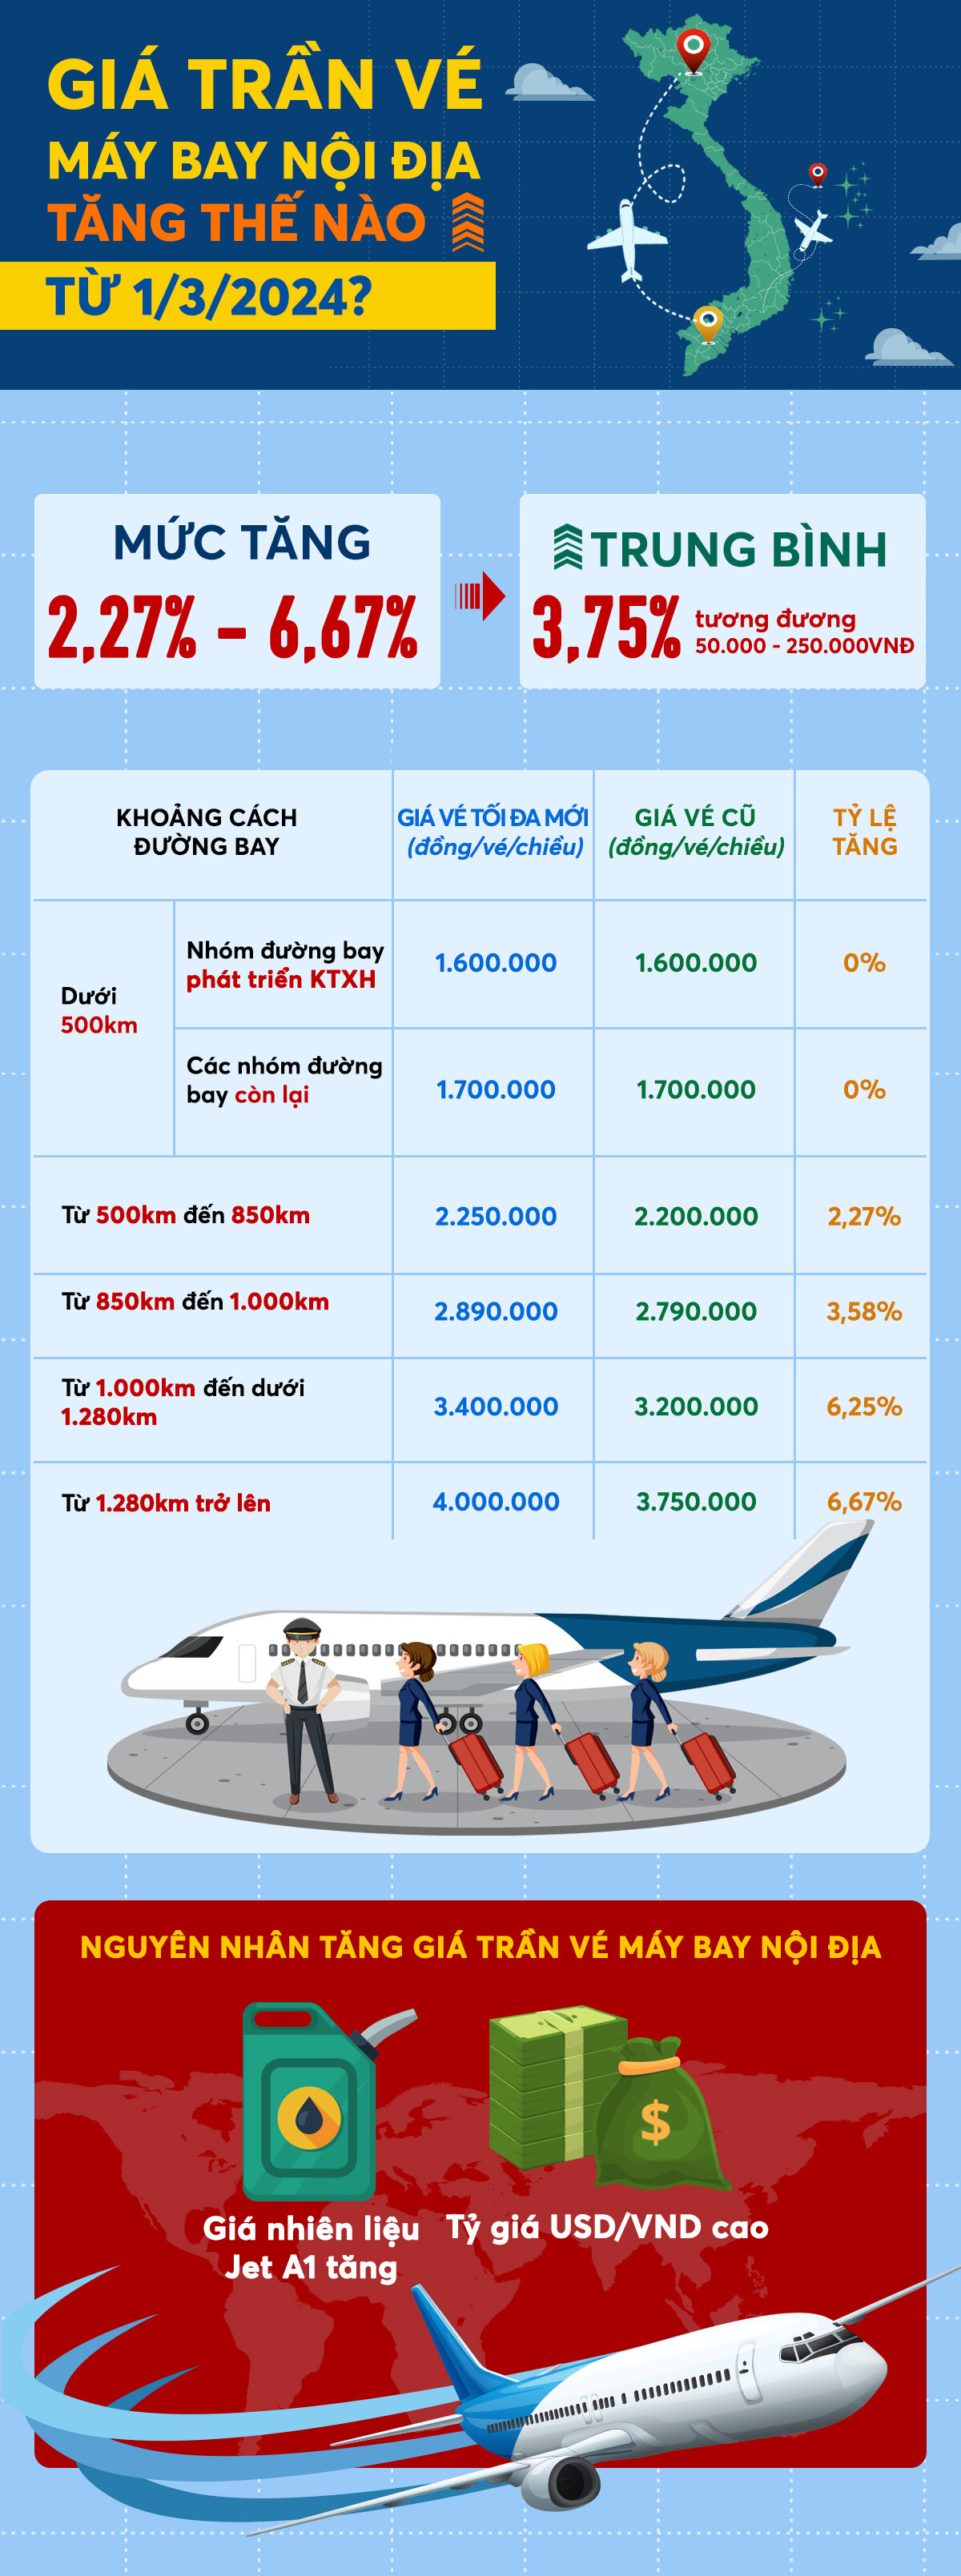 Infographic: Từ hôm nay, giá trần vé máy bay nội địa tăng thế nào? - 1